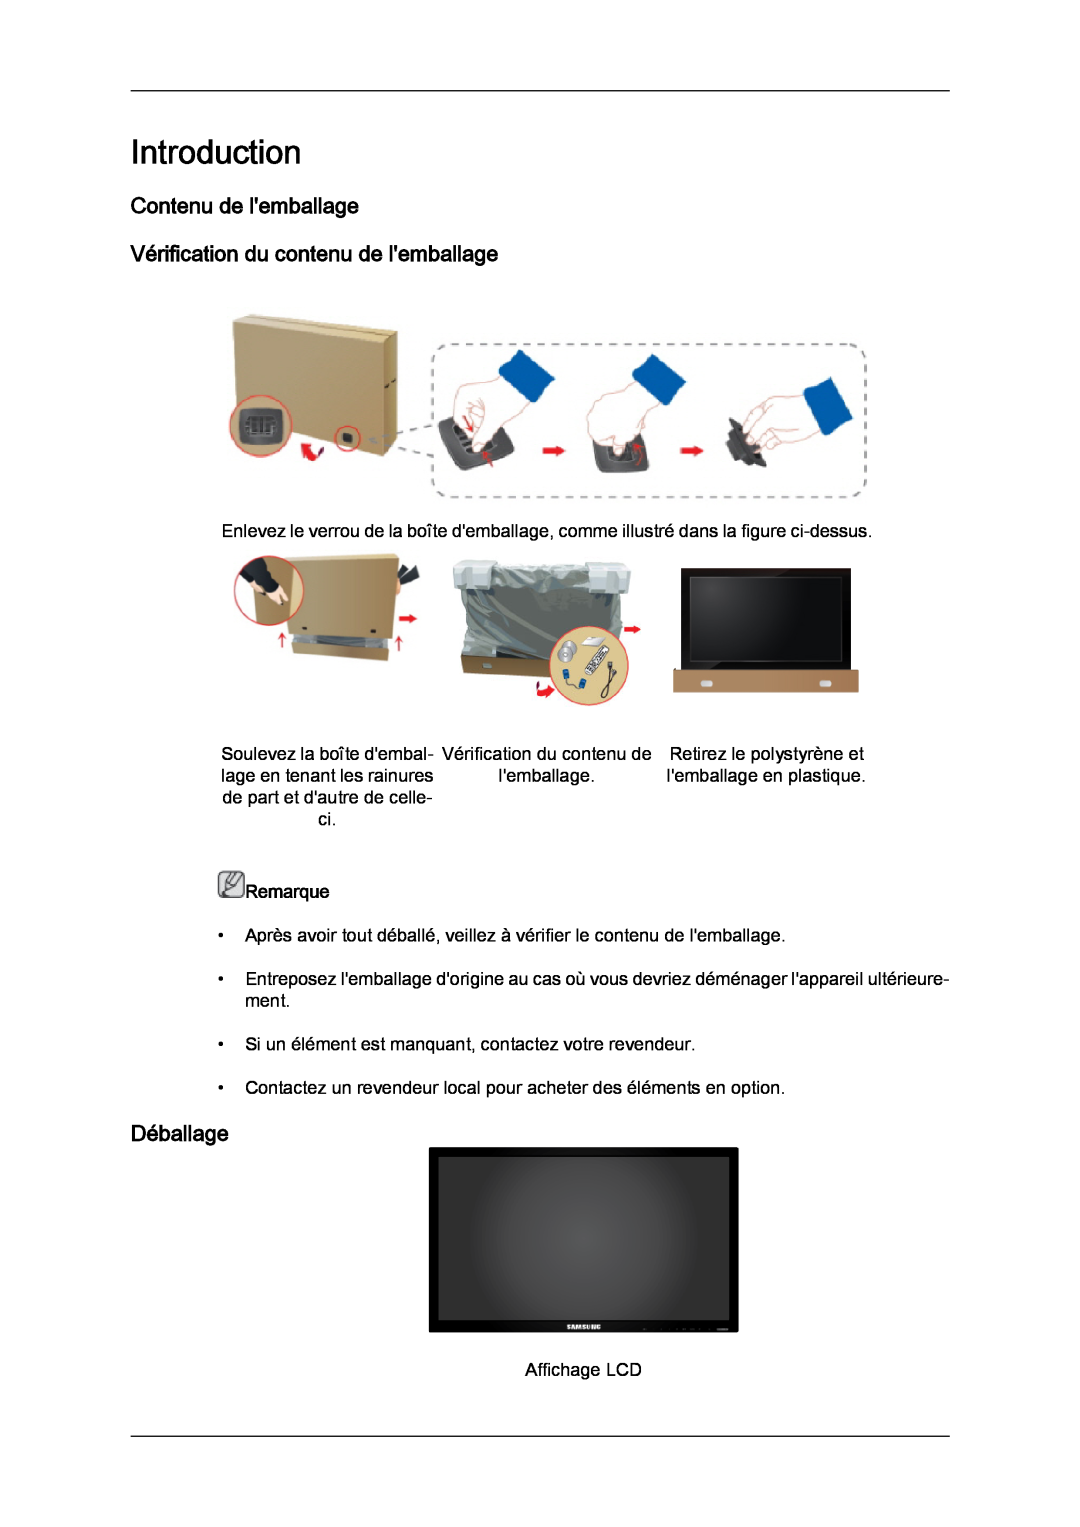 Samsung LH40CRPMBD/EN manual Introduction, Contenu de lemballage Vérification du contenu de lemballage, Déballage, Remarque 